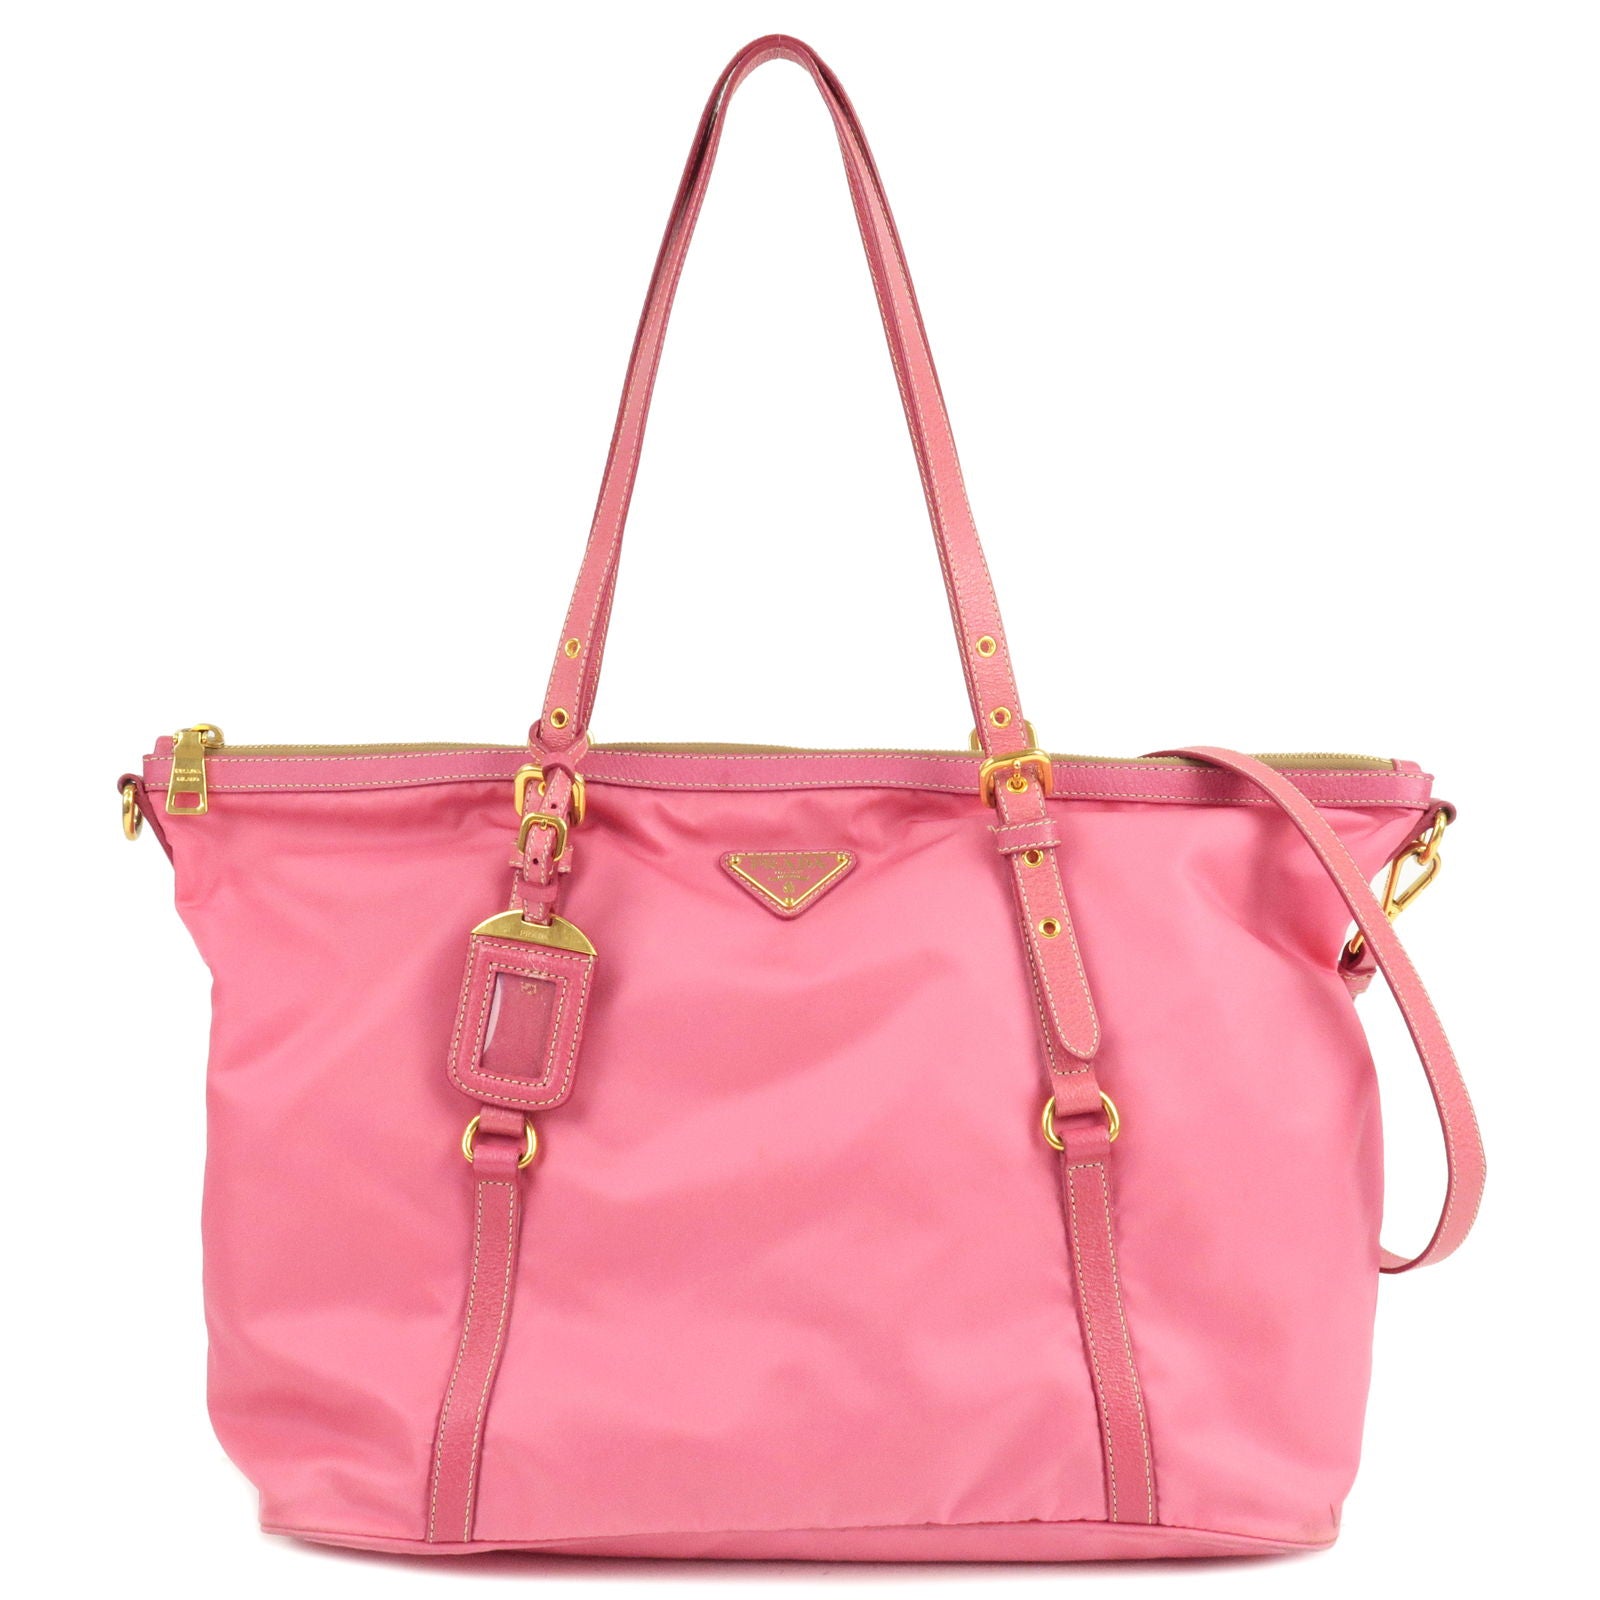 PRADA-Logo-Nylon-Leather-2Way-Bag-Tote-Bag-Hand-Bag-Pink